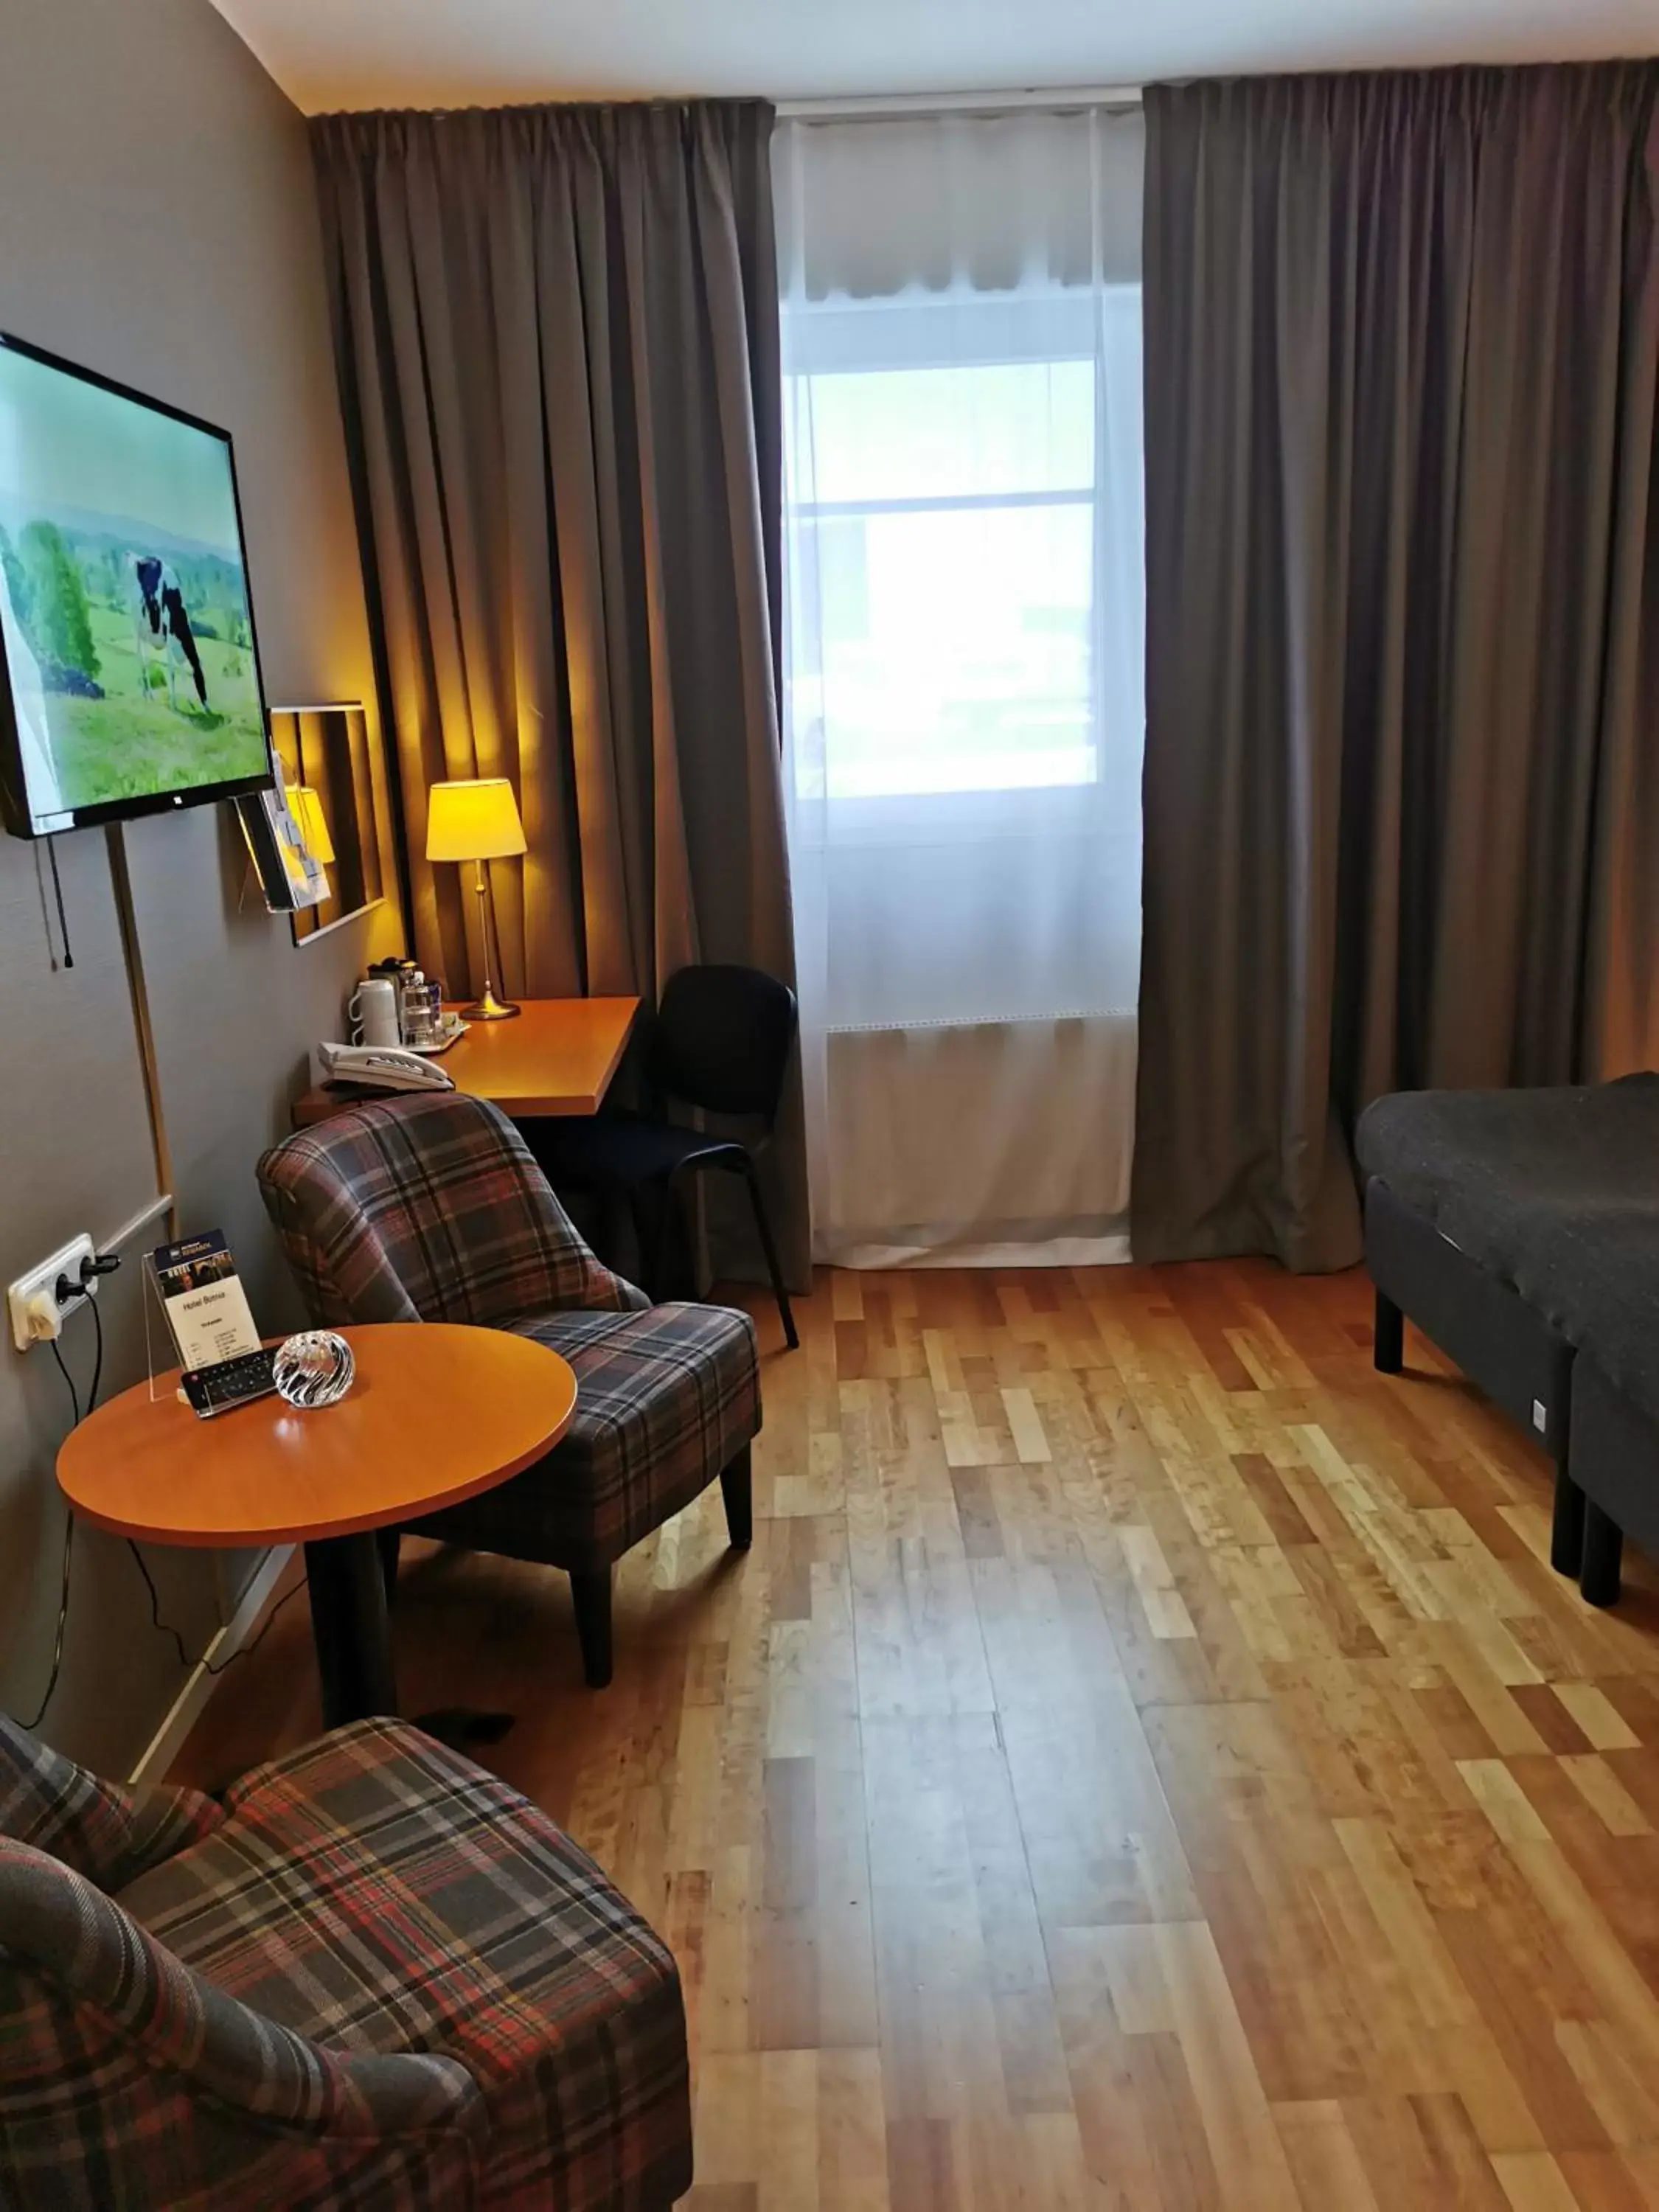 Bedroom, Seating Area in Best Western Hotel Botnia